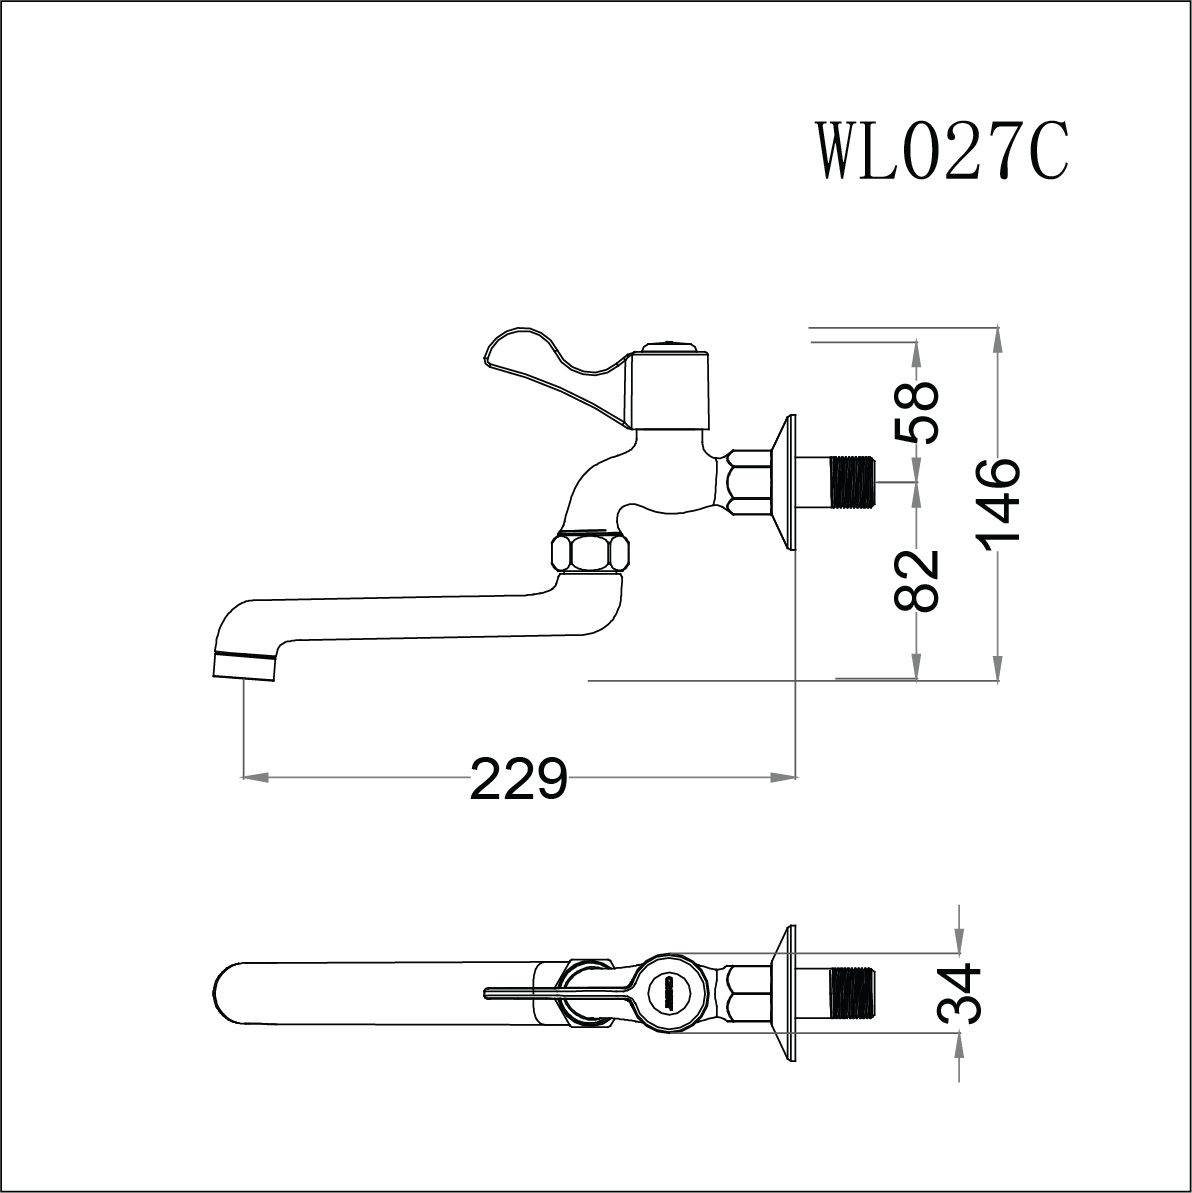  Vòi Lạnh Gắn Tường - WL027C 